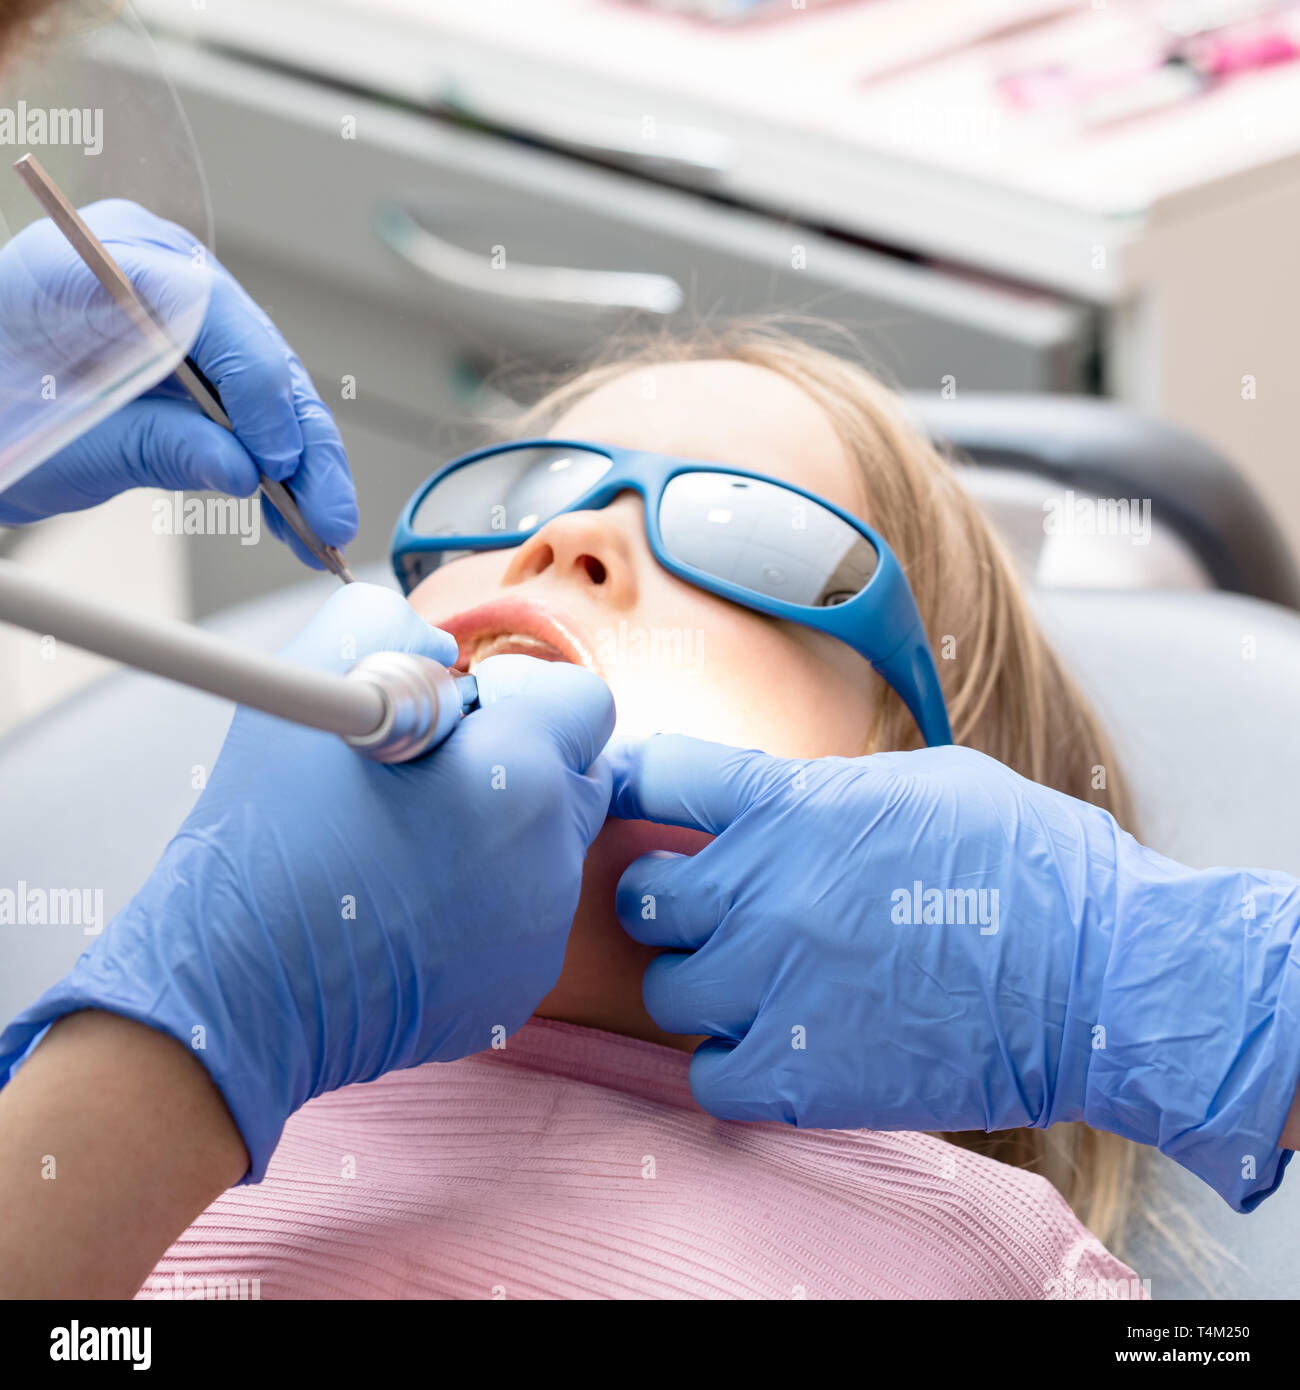 Effectuer la procédure de remplissage dentaire dentiste pour une petite fille à la clinique de dentisterie pédiatrique. Médecin de retirer à l'aide de caries dentaires à haute vitesse. Calme ch Banque D'Images